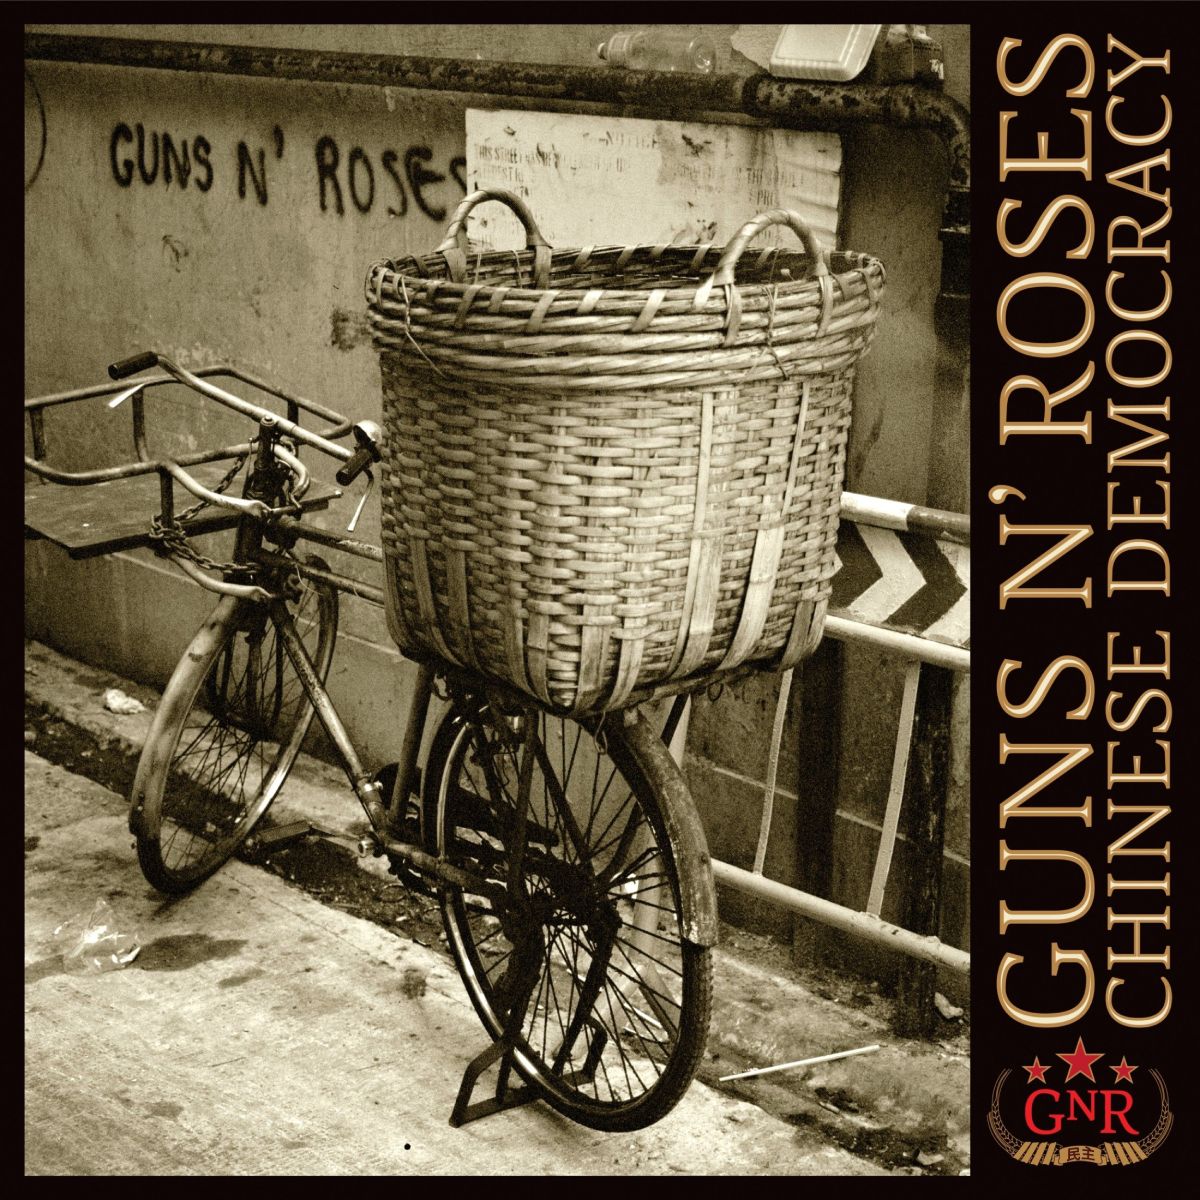 Guns N’ Roses, альбом «Chinese Democracy»